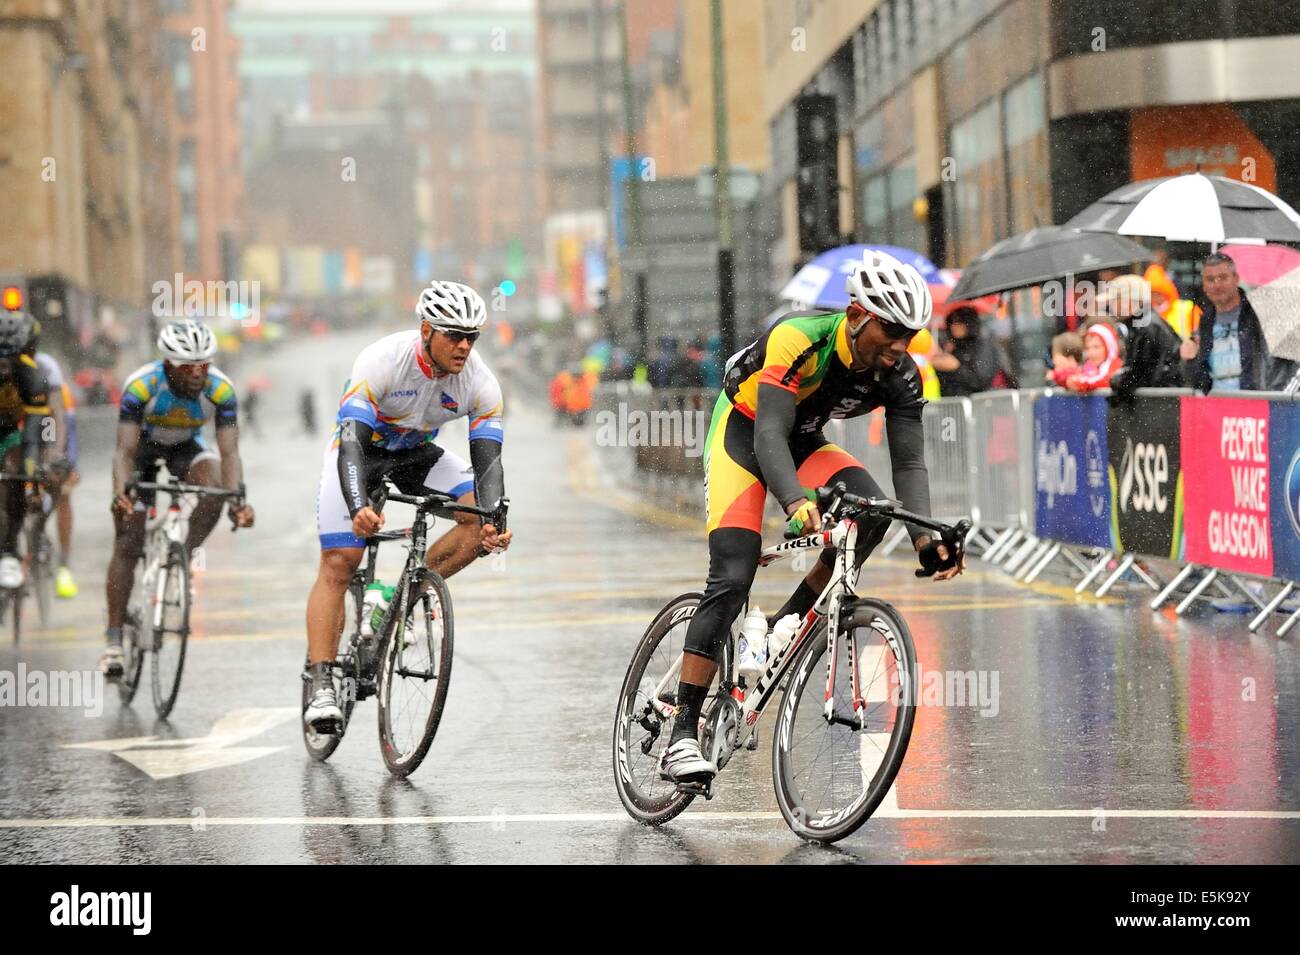 Gara di concorrenti in condizioni dure compresi heavy rain nella loro battaglia per una medaglia nel giorno finale sui giochi del Commonwealth a Glasgow Foto Stock